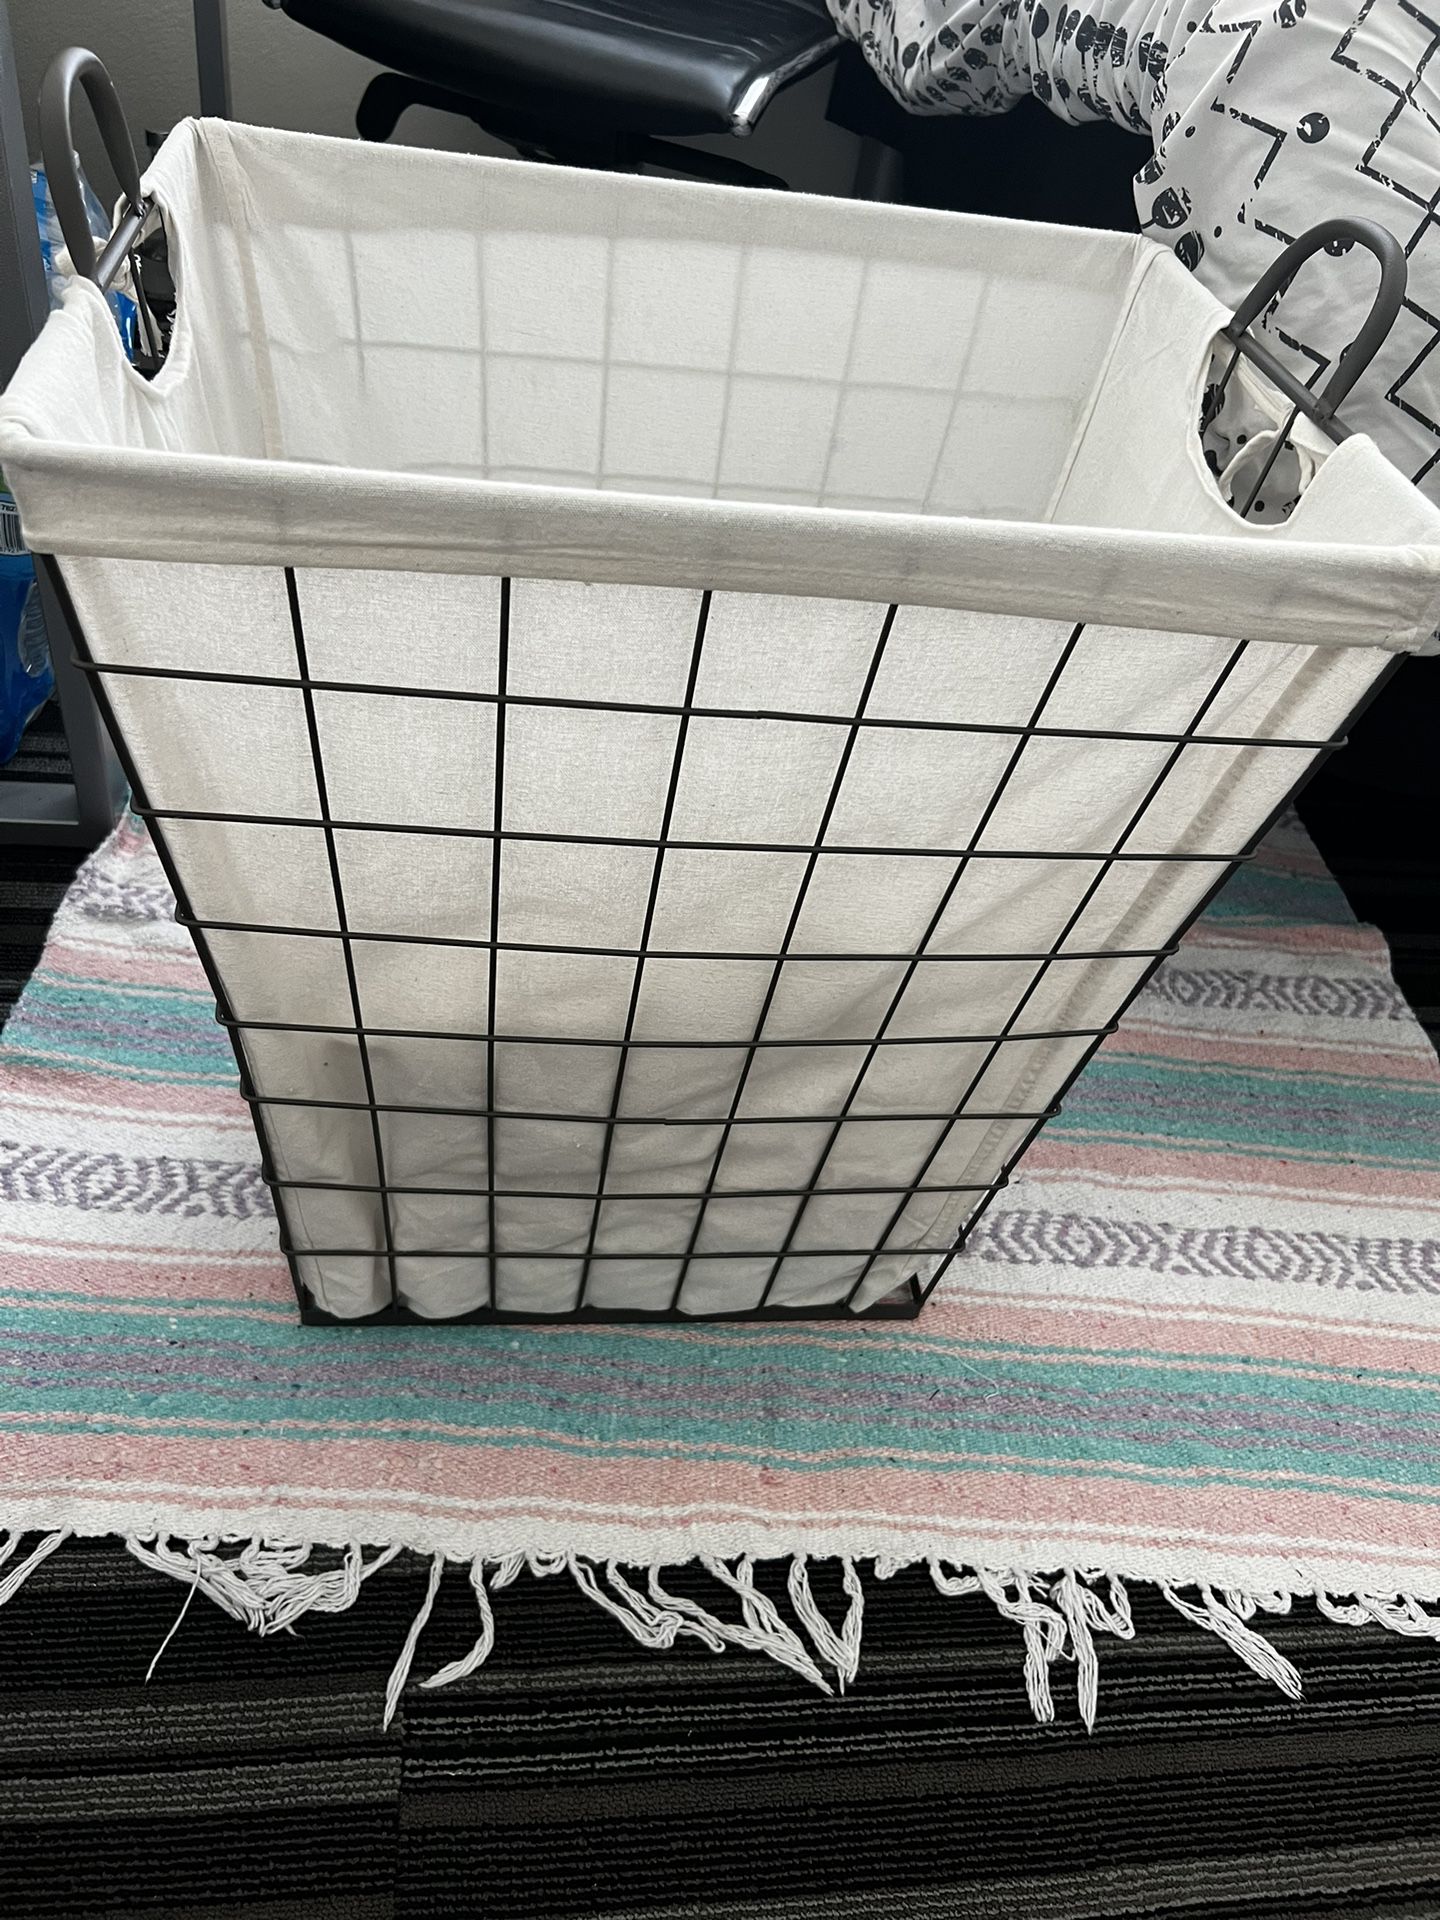 Laundary basket + carpet + shower filter: $35